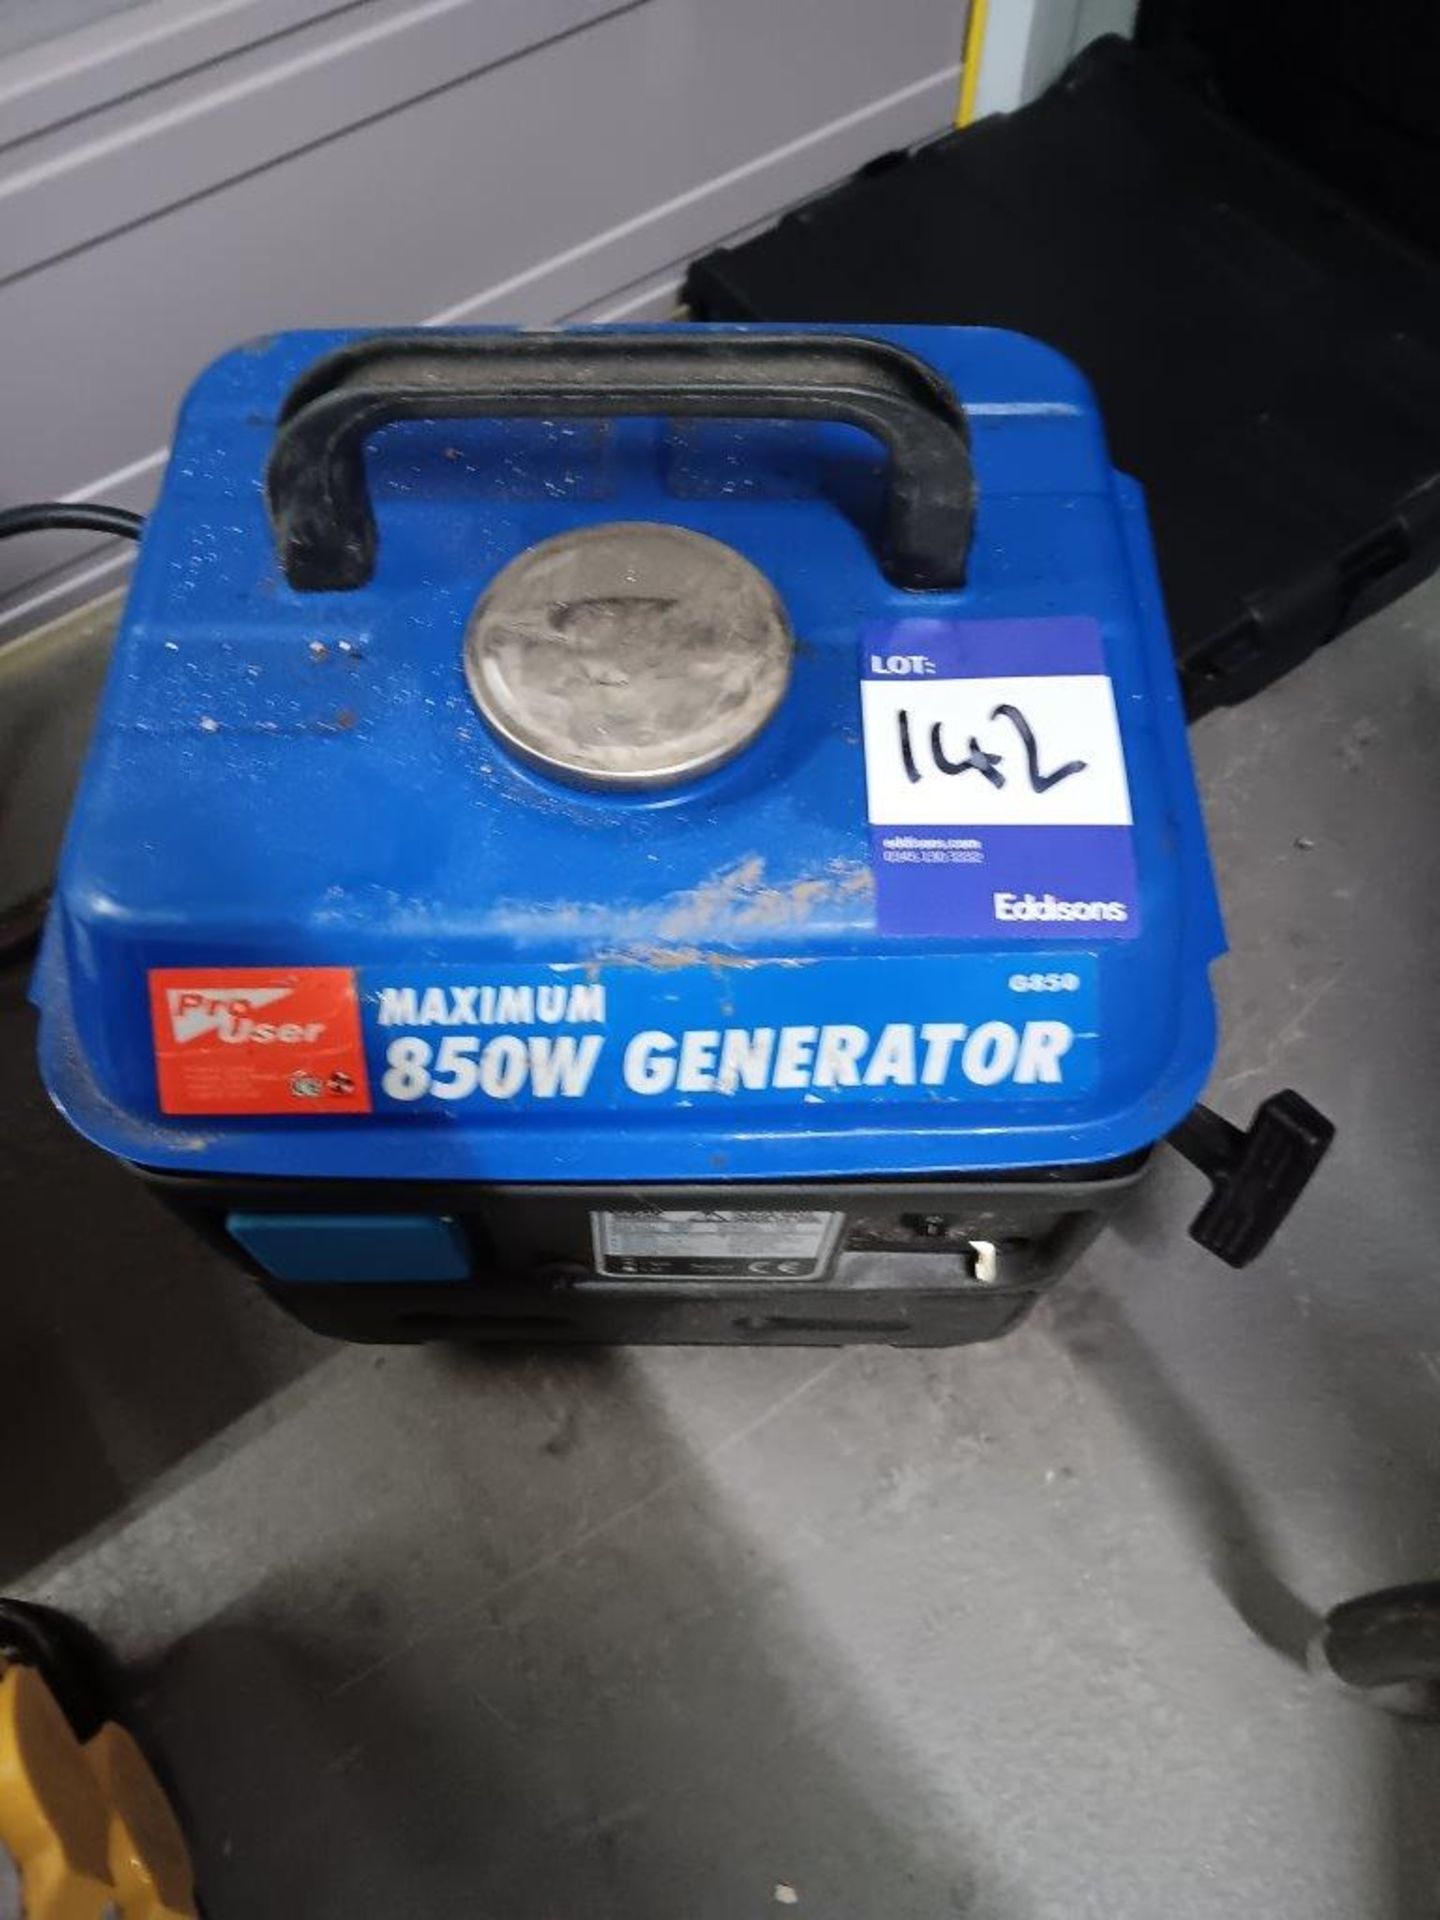 PRO USER G850 Maximum 850W Petrol Generator